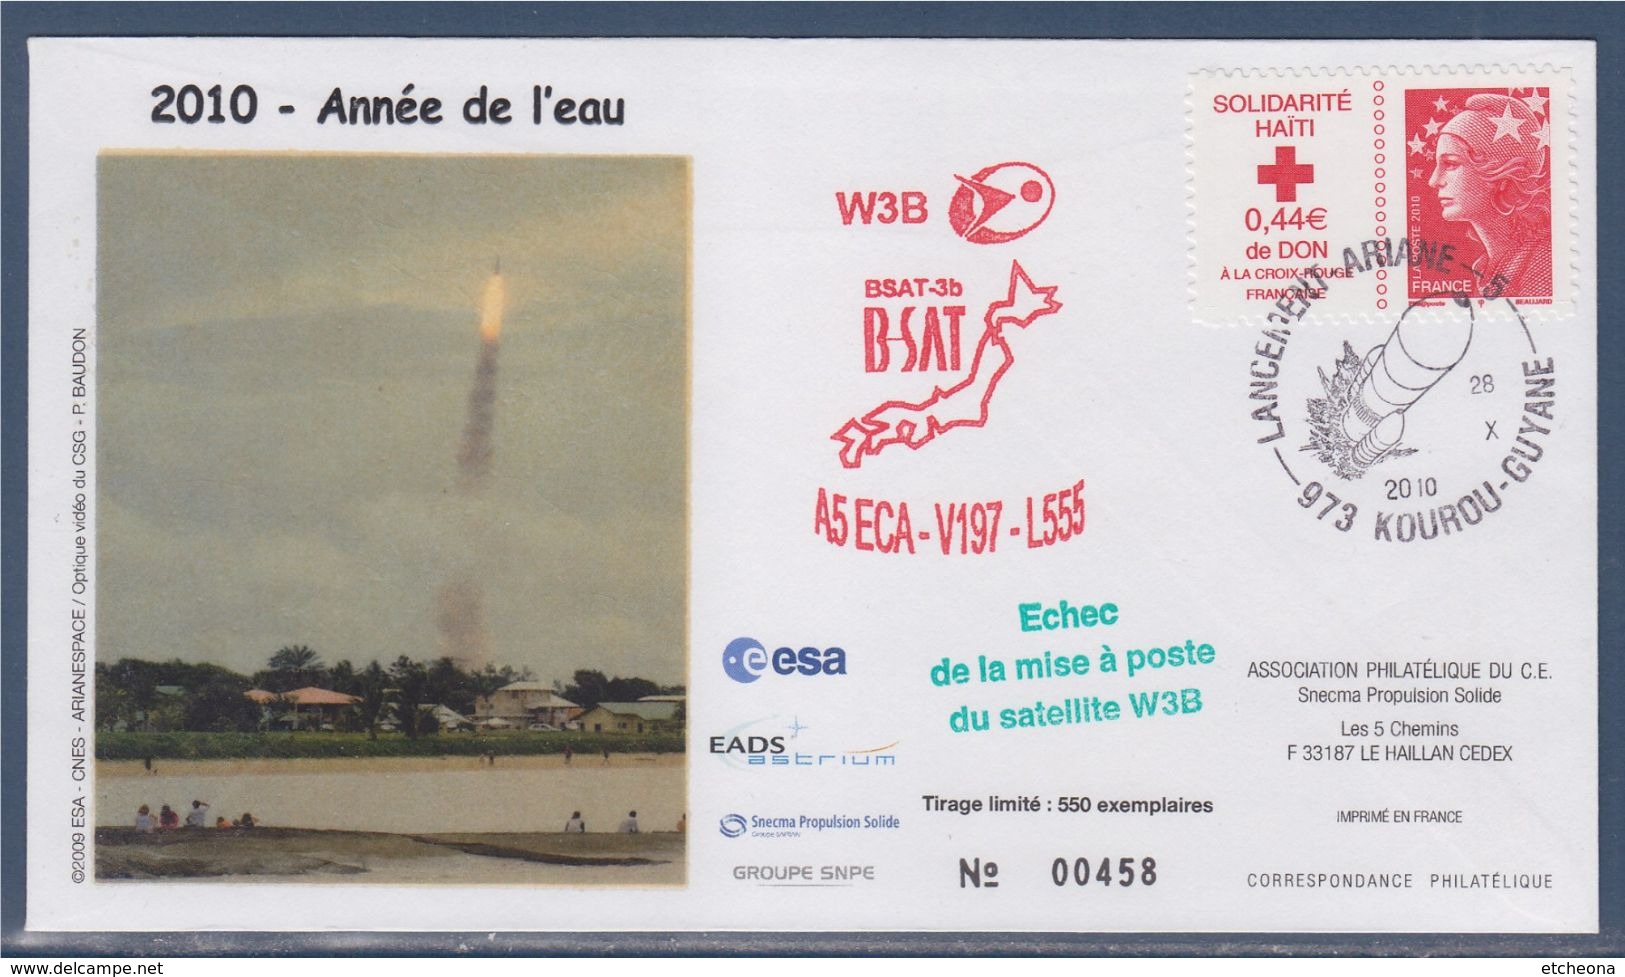 = Lancement Ariane 5 A5ECA-V197-L555, W3B, BSAT-3b B-SAT Kourou Guyane 28.X.2010, échec De La Mise à Poste Satellite W3B - South America